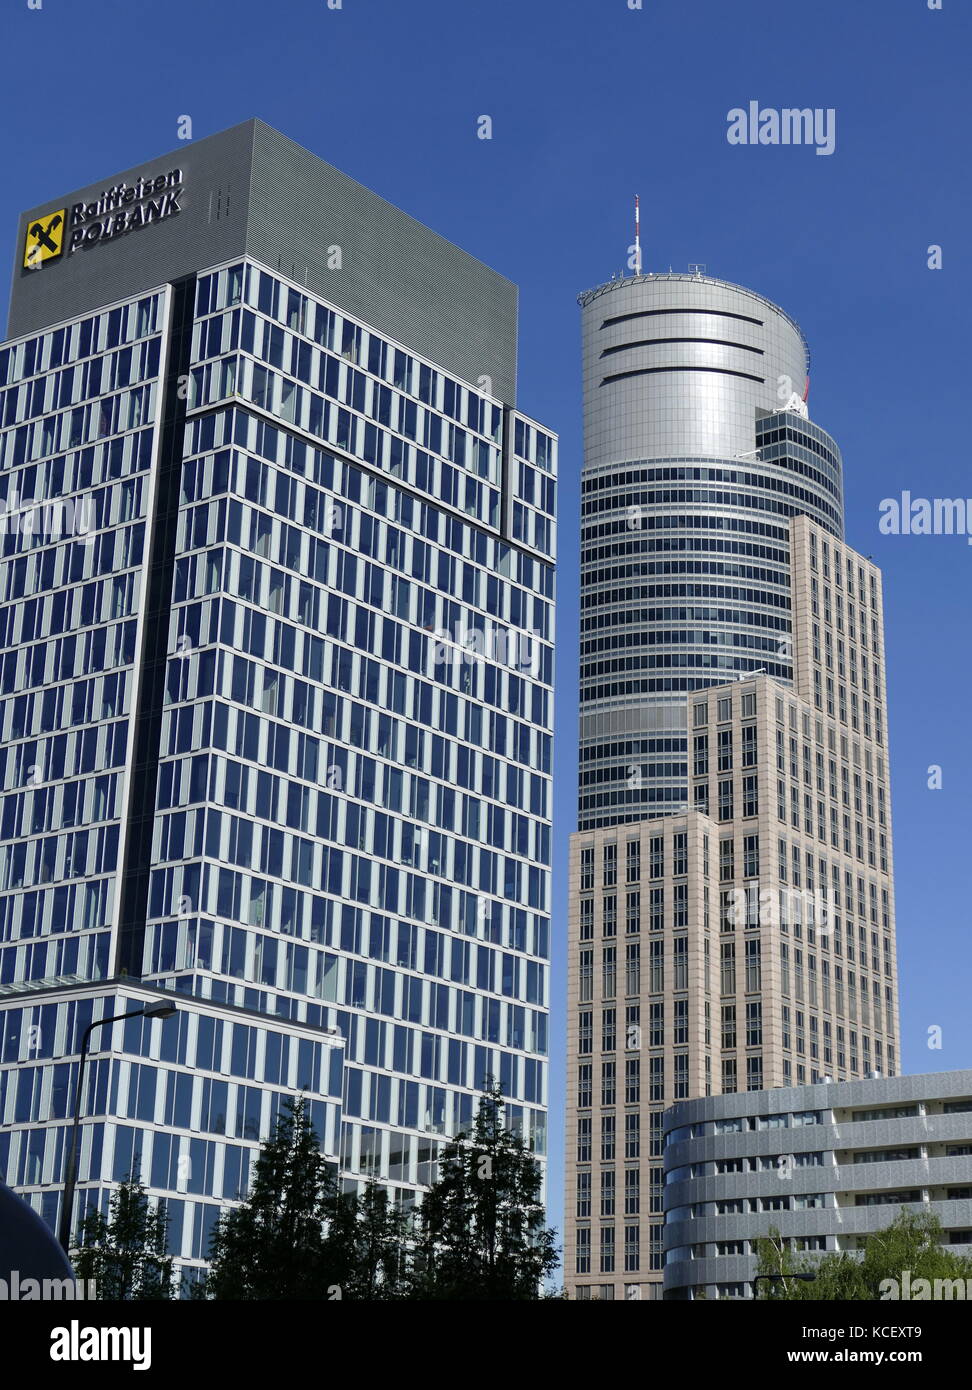 Foto der Warsaw Trade Tower (WTT) einen Wolkenkratzer in Warschau. Es wurde 1999 fertiggestellt. Moderne Wolkenkratzer in Warschau Polen mark Übergang des Landes in einem freien Markt, post-kommunistischen wirtschaftlichen Macht. Vom 21. Jahrhundert Stockfoto